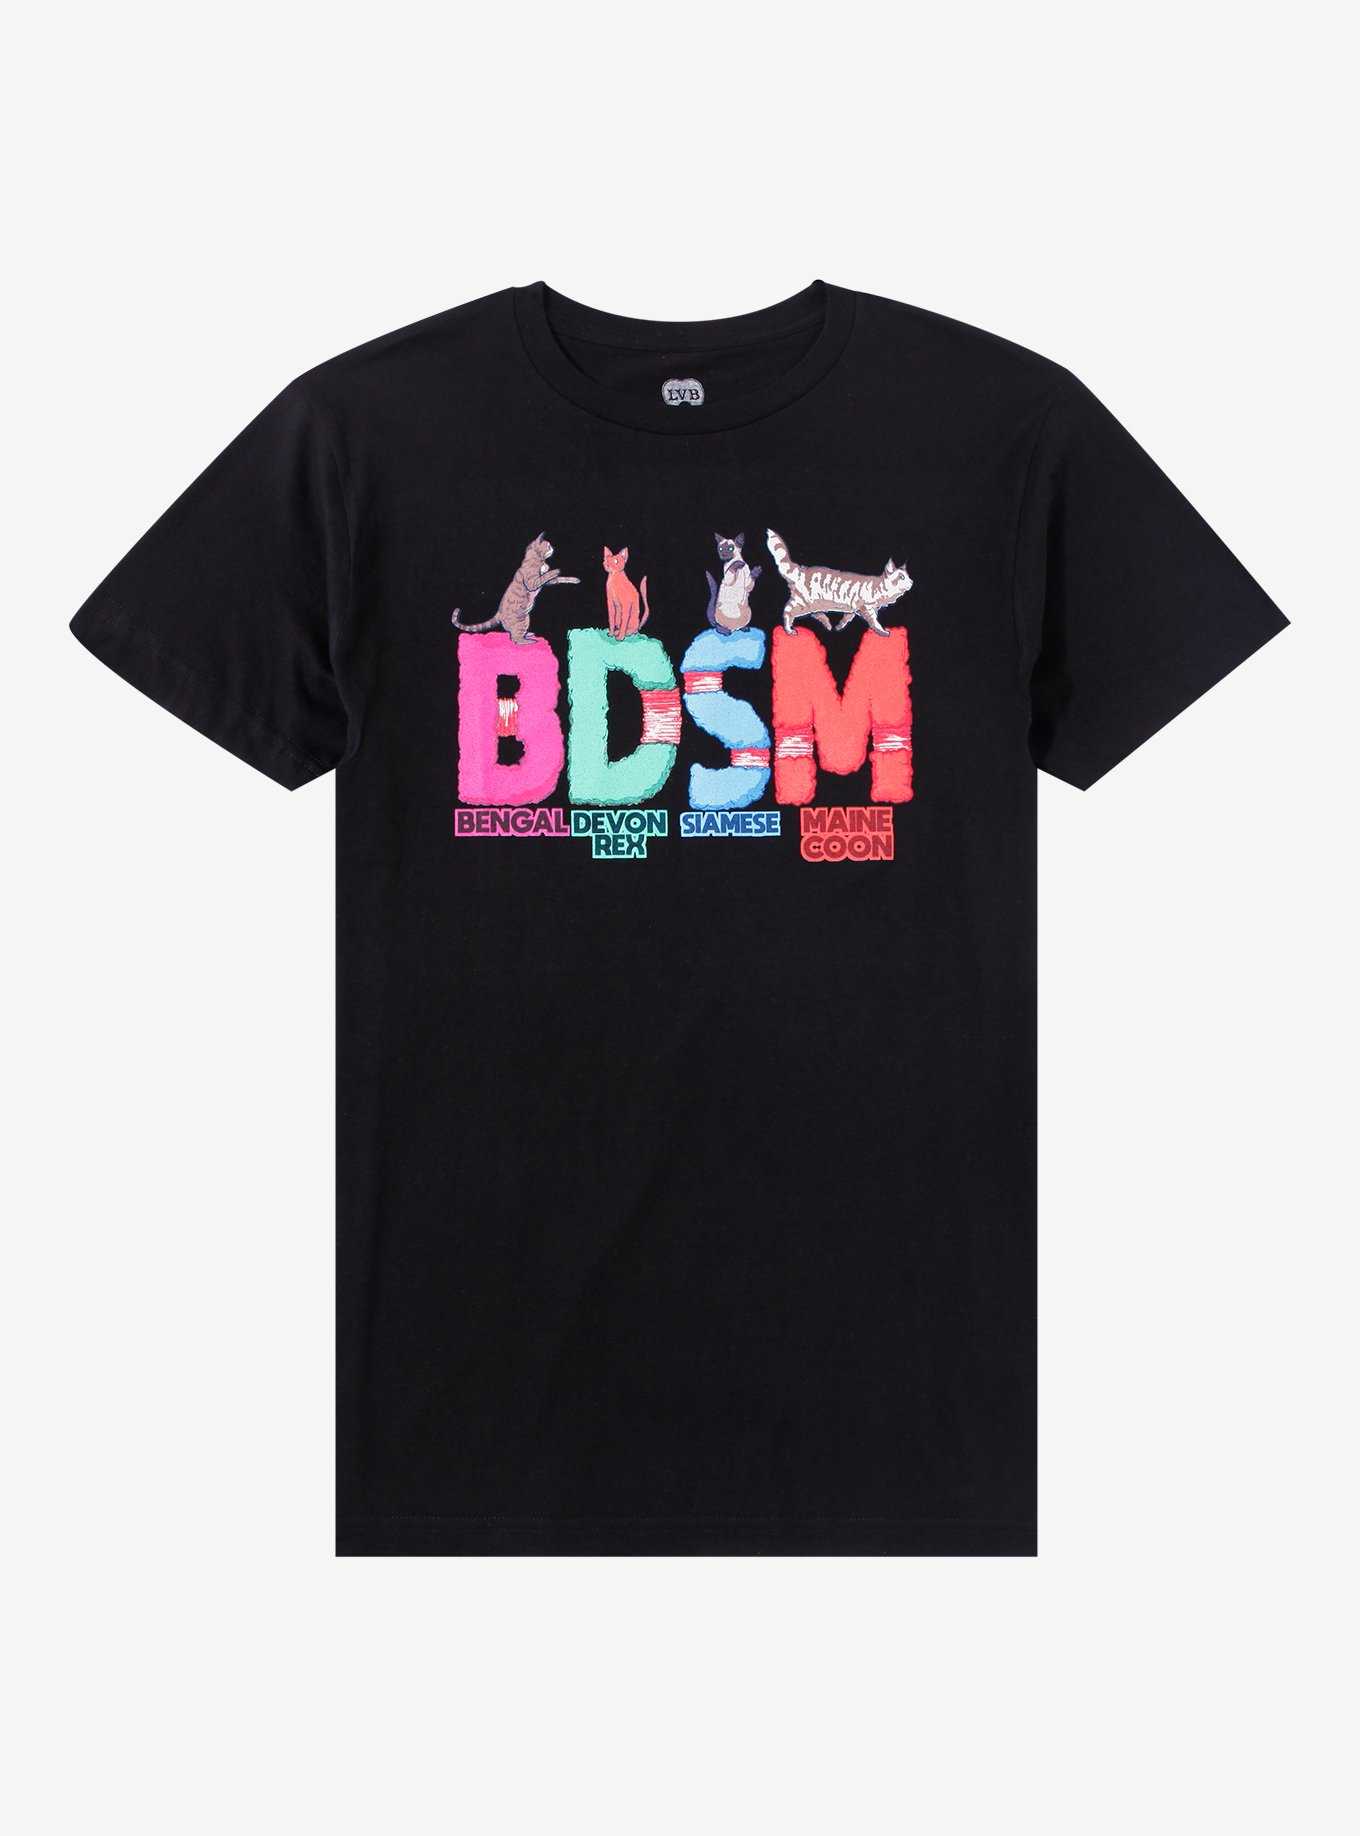 BDSM Cats T-Shirt By LVB Art, , hi-res